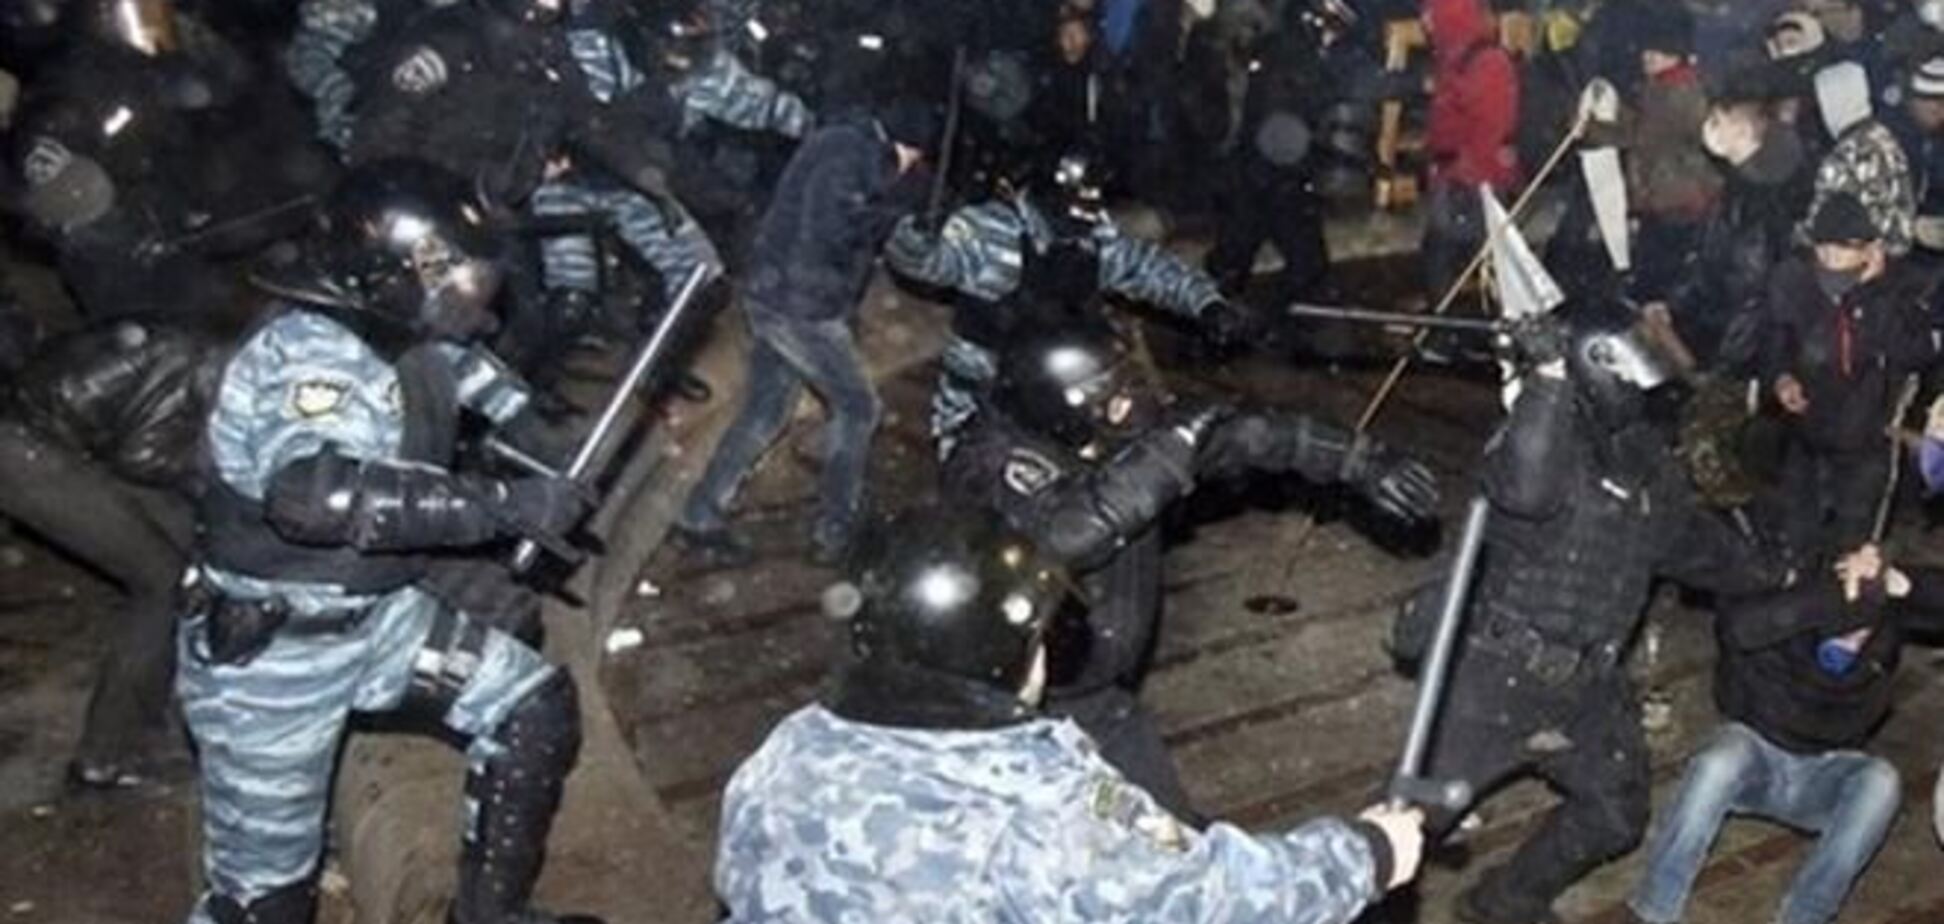 МВД: никаких планов разгона Майдана у милиции нет